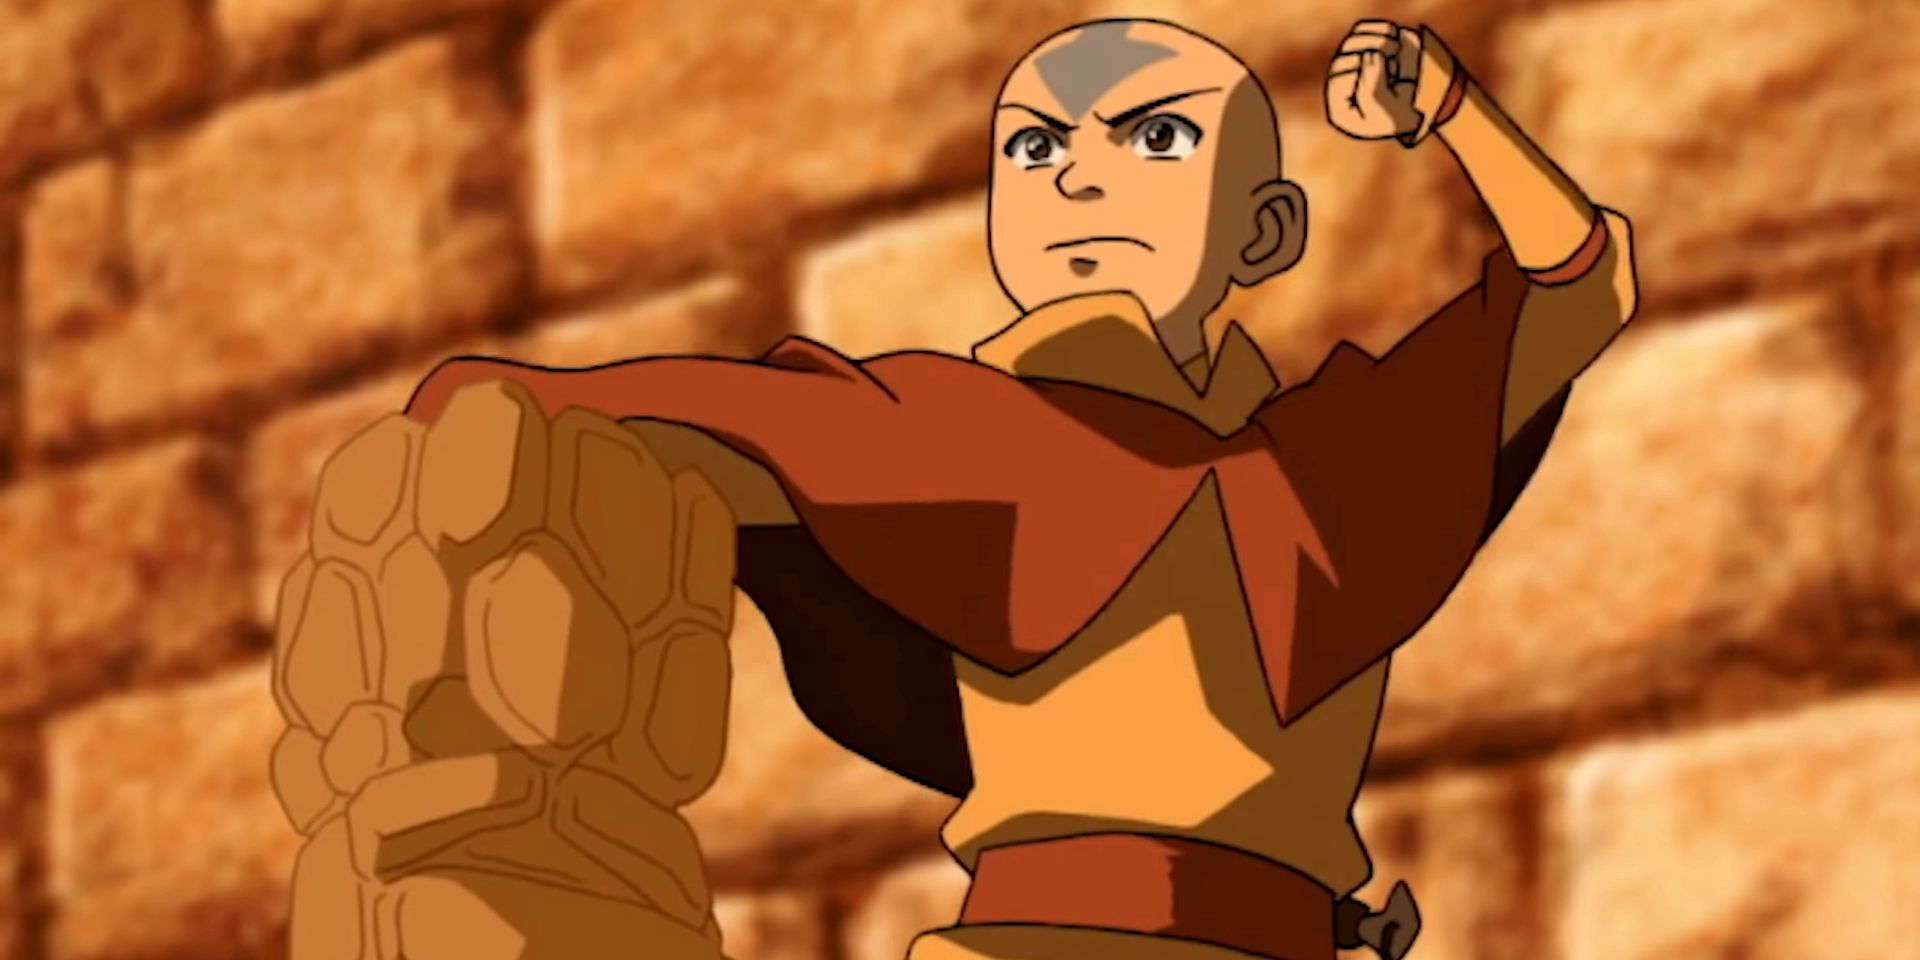  Aang fighting in Avatar The Last Airbender